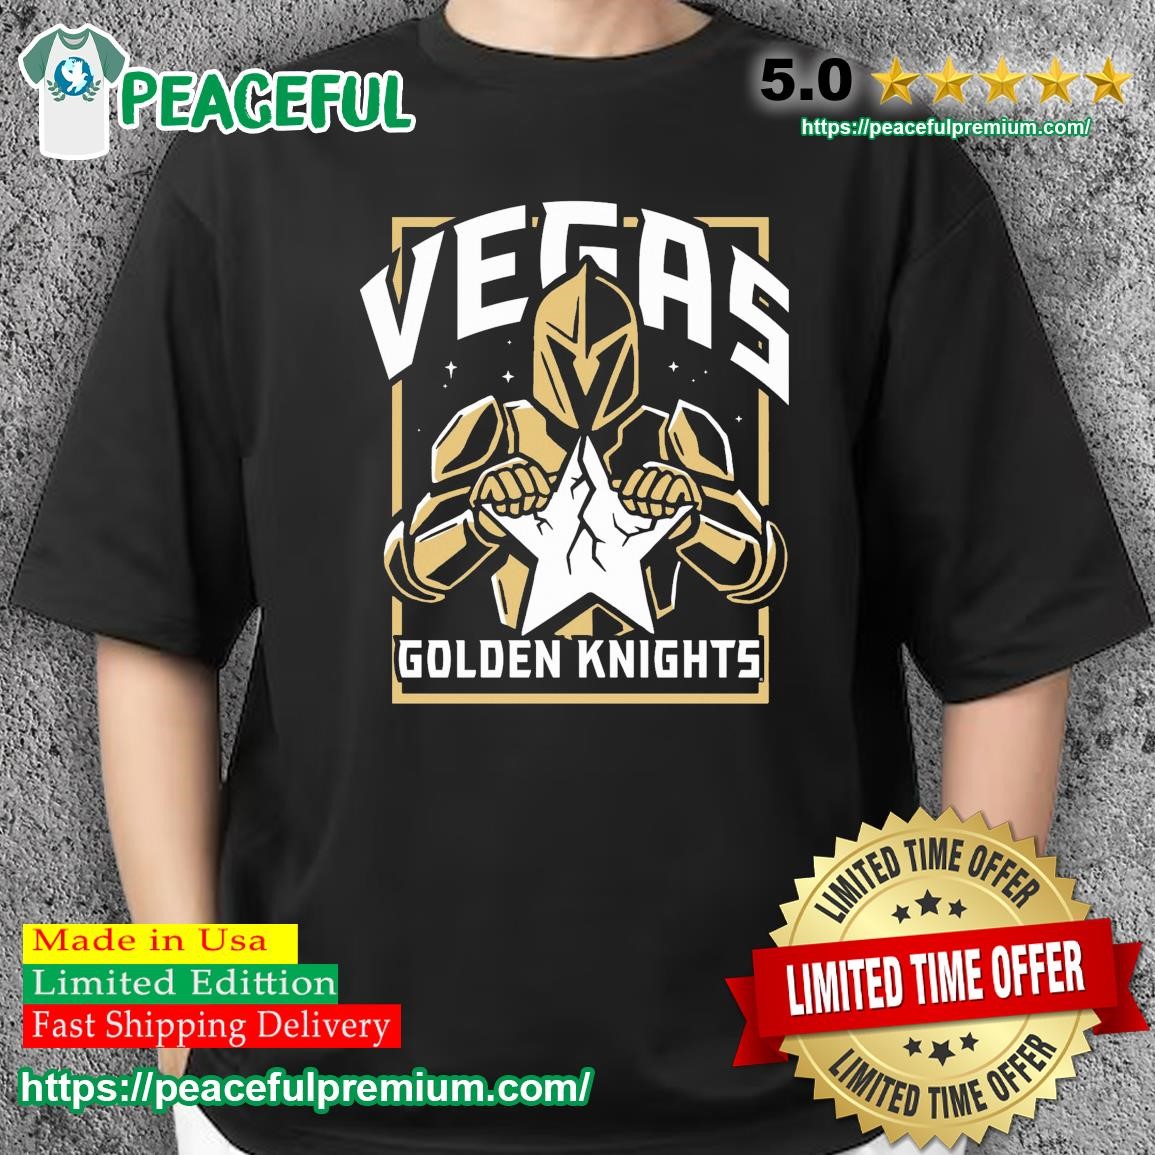 Vegas Golden Knights Playoffs Gear, Knights Jerseys, Vegas Golden